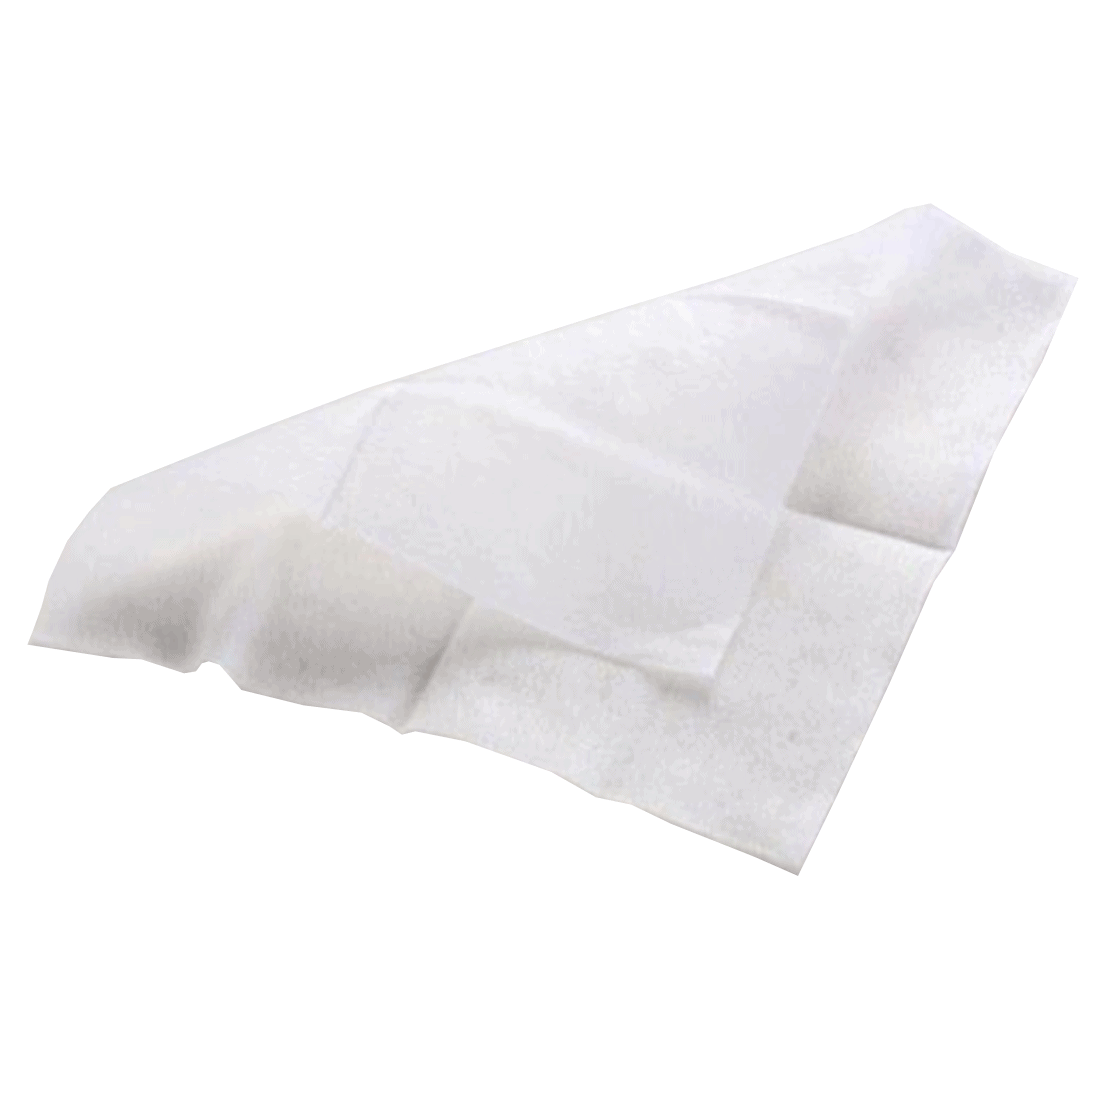 Tampons antiseptiques servant a desinfecter les mains - enveloppes separement